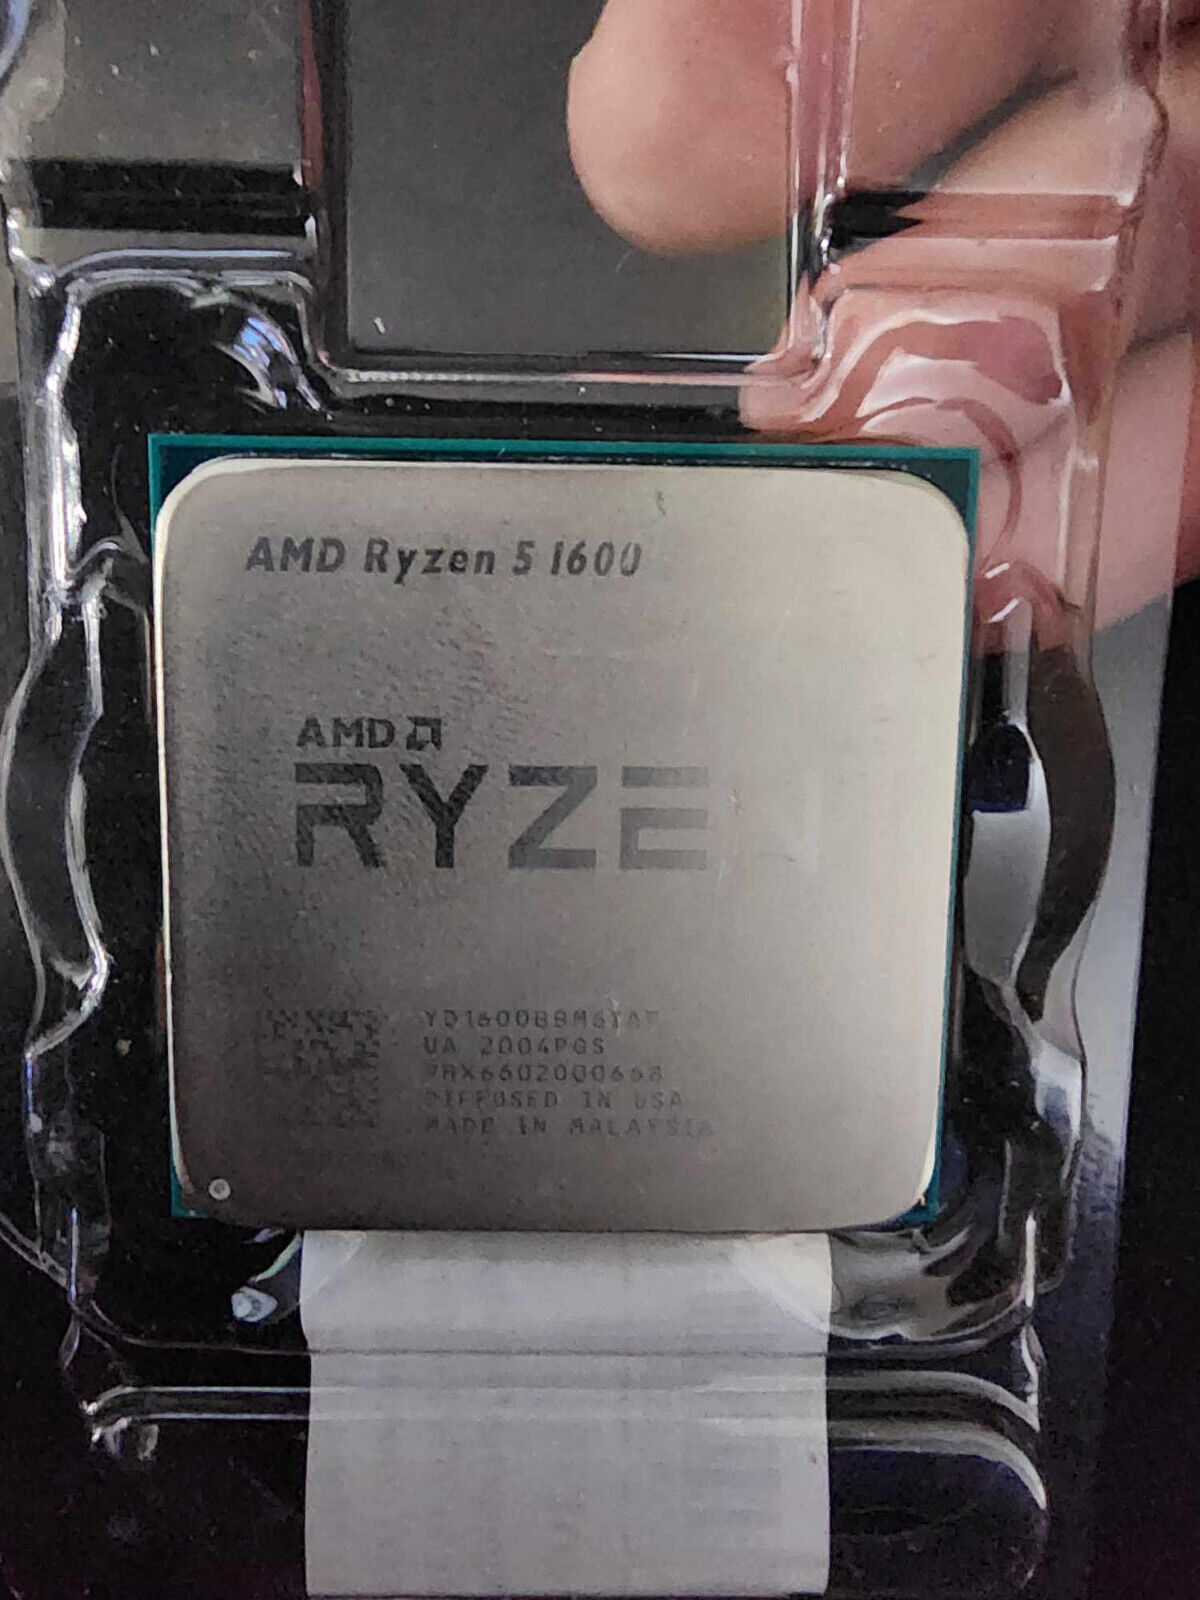 AMD YD1600BBM6IAE Ryzen 5 1600 AM4 Hexa-core 3.2 GHz Gaming Processor